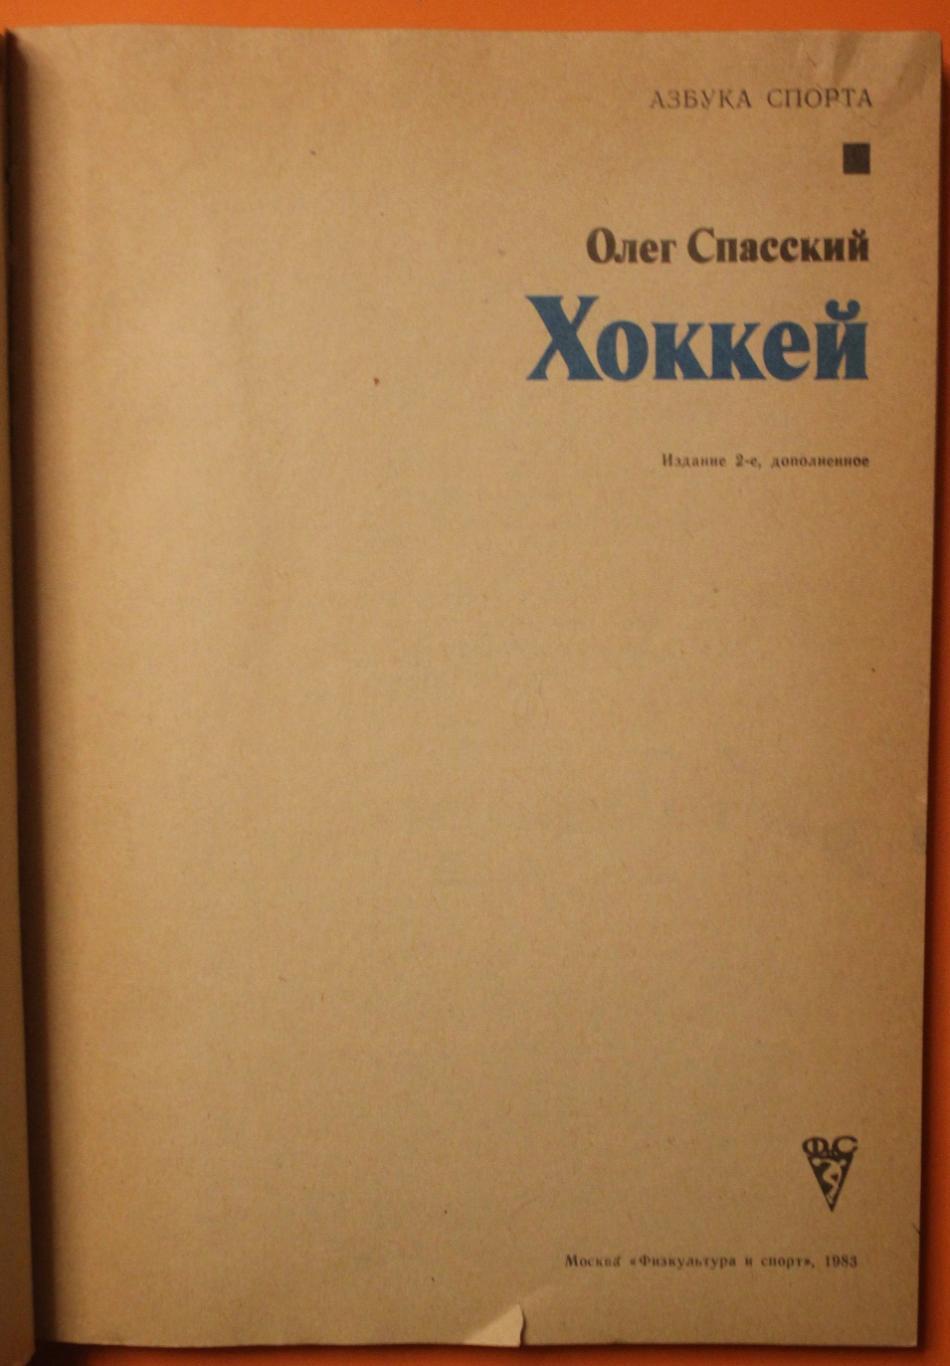 Олег Спасский Хоккей изд. 1983 2